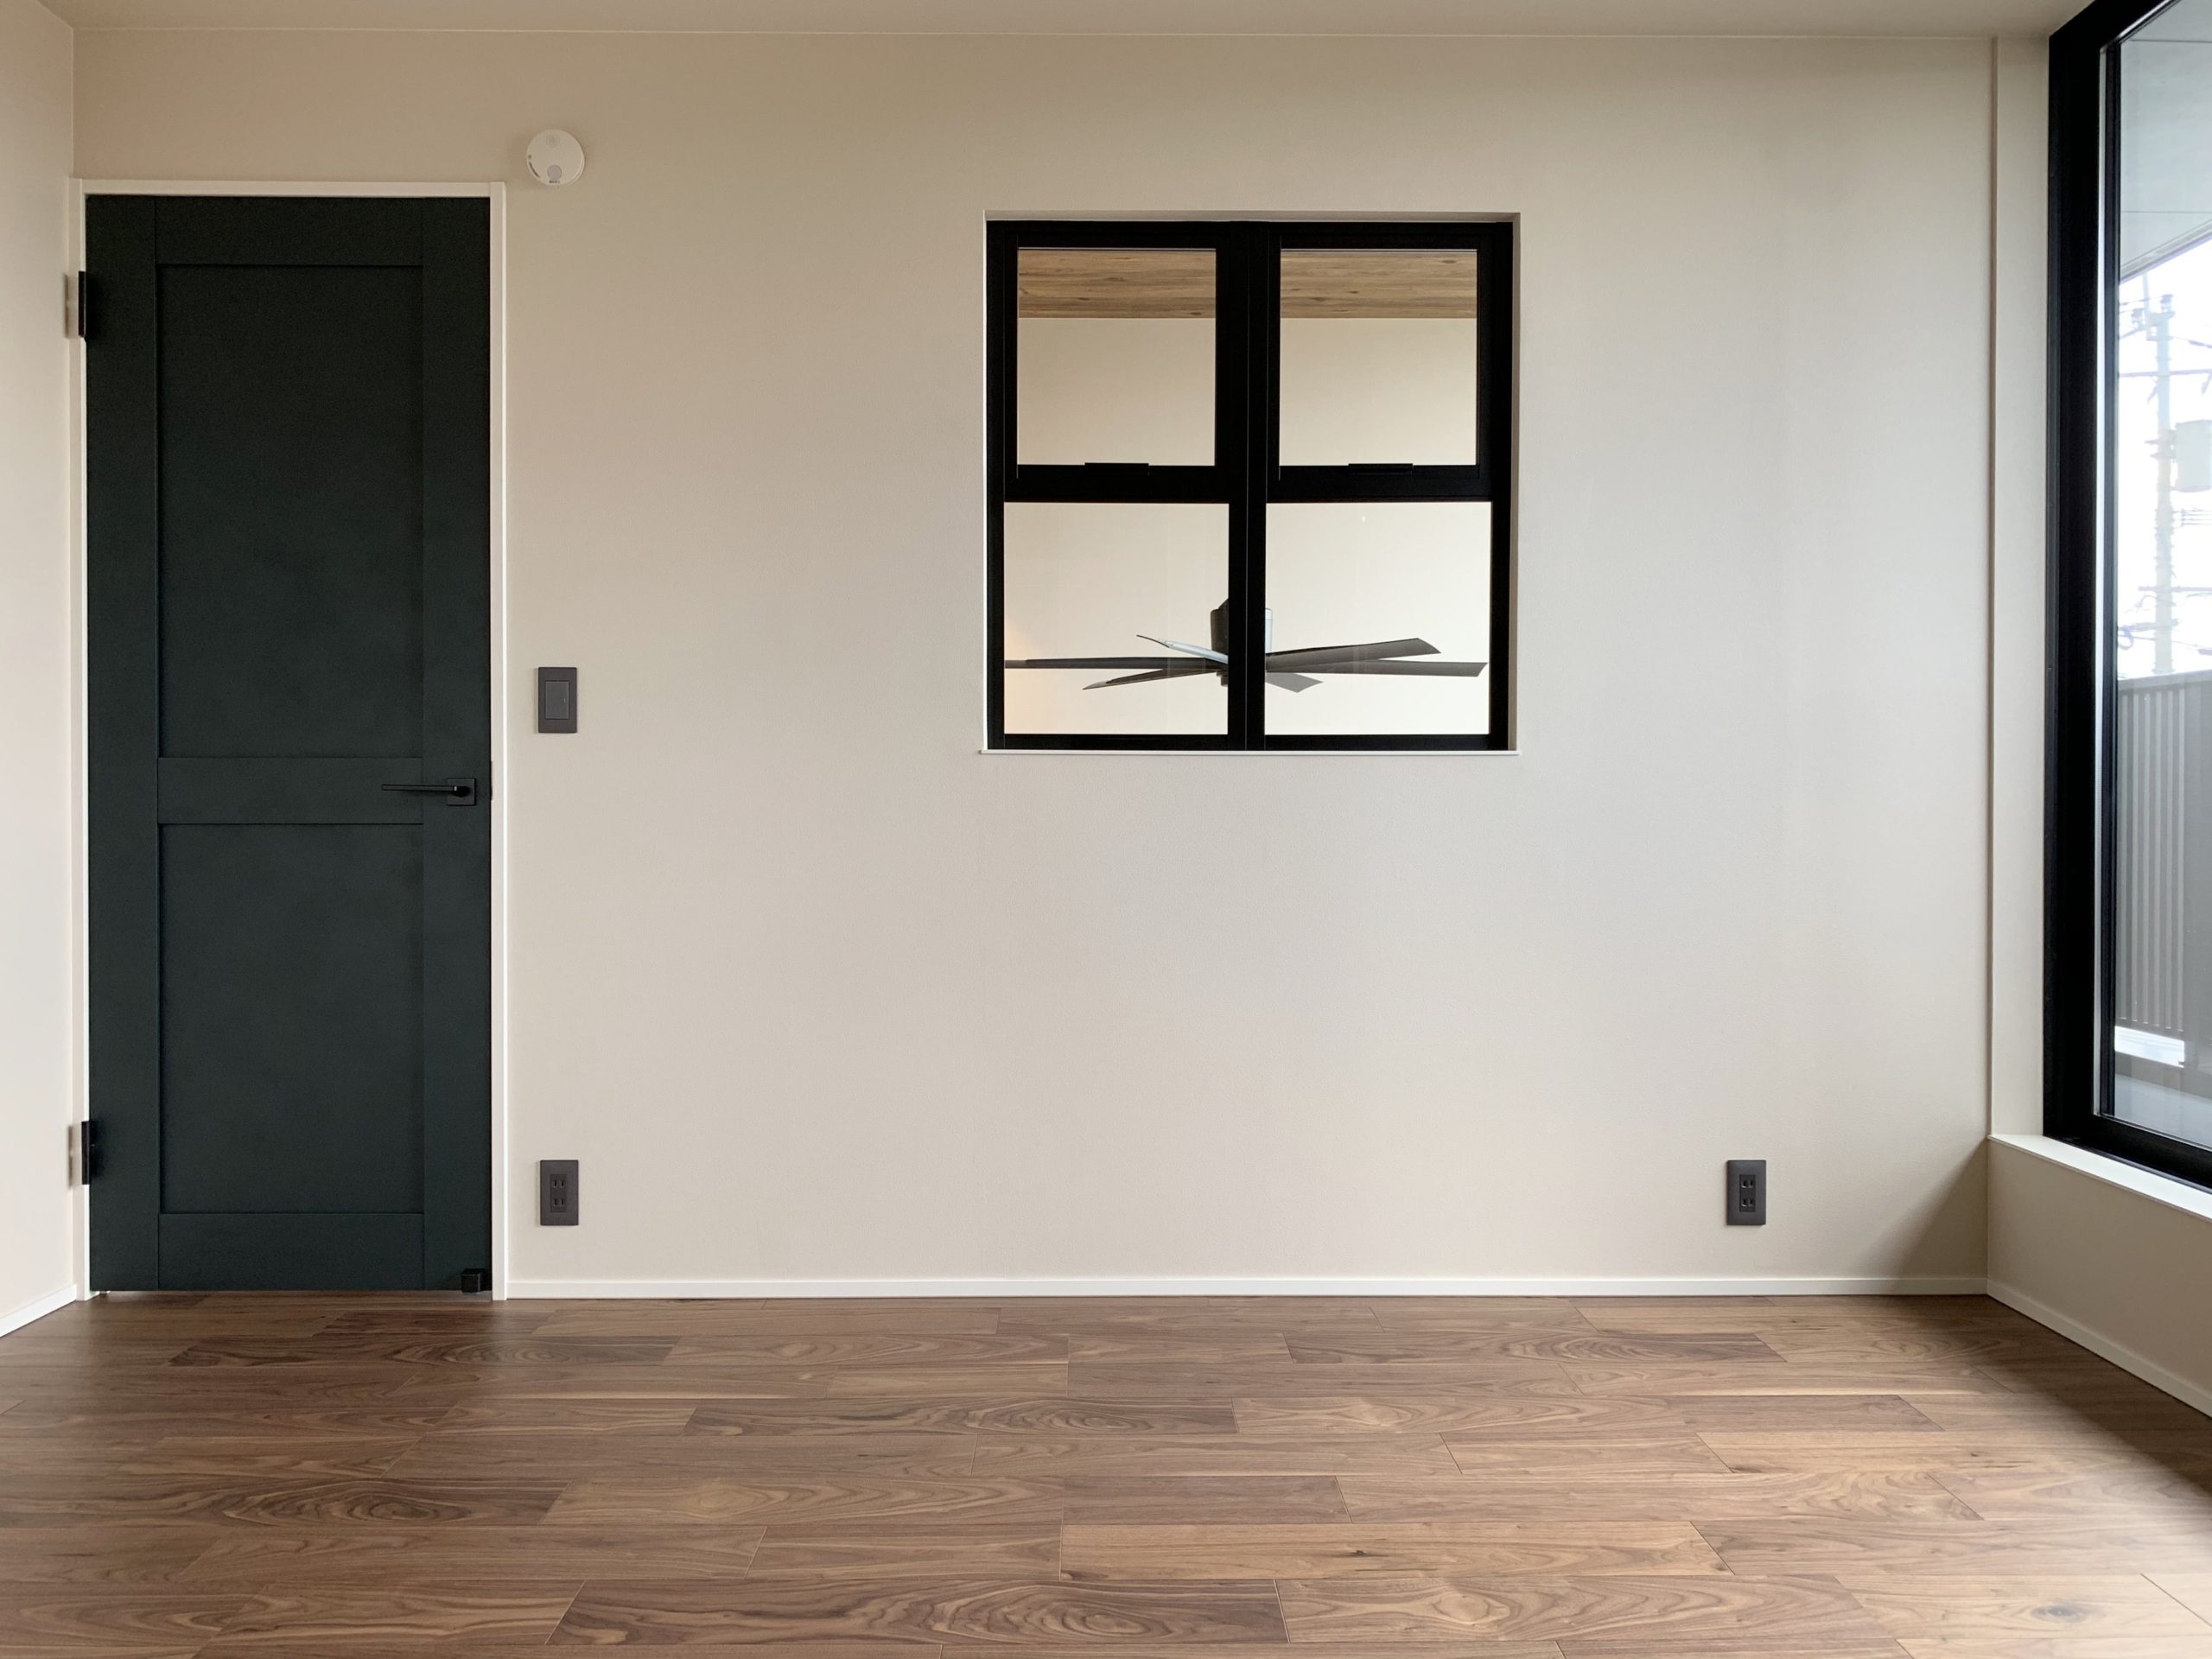 2階寝室と吹き抜けを繋ぐ室内窓。室内ドアとウォルナット床材、鋳鉄調の窓枠に、共通したマットな質感を採り入れる。